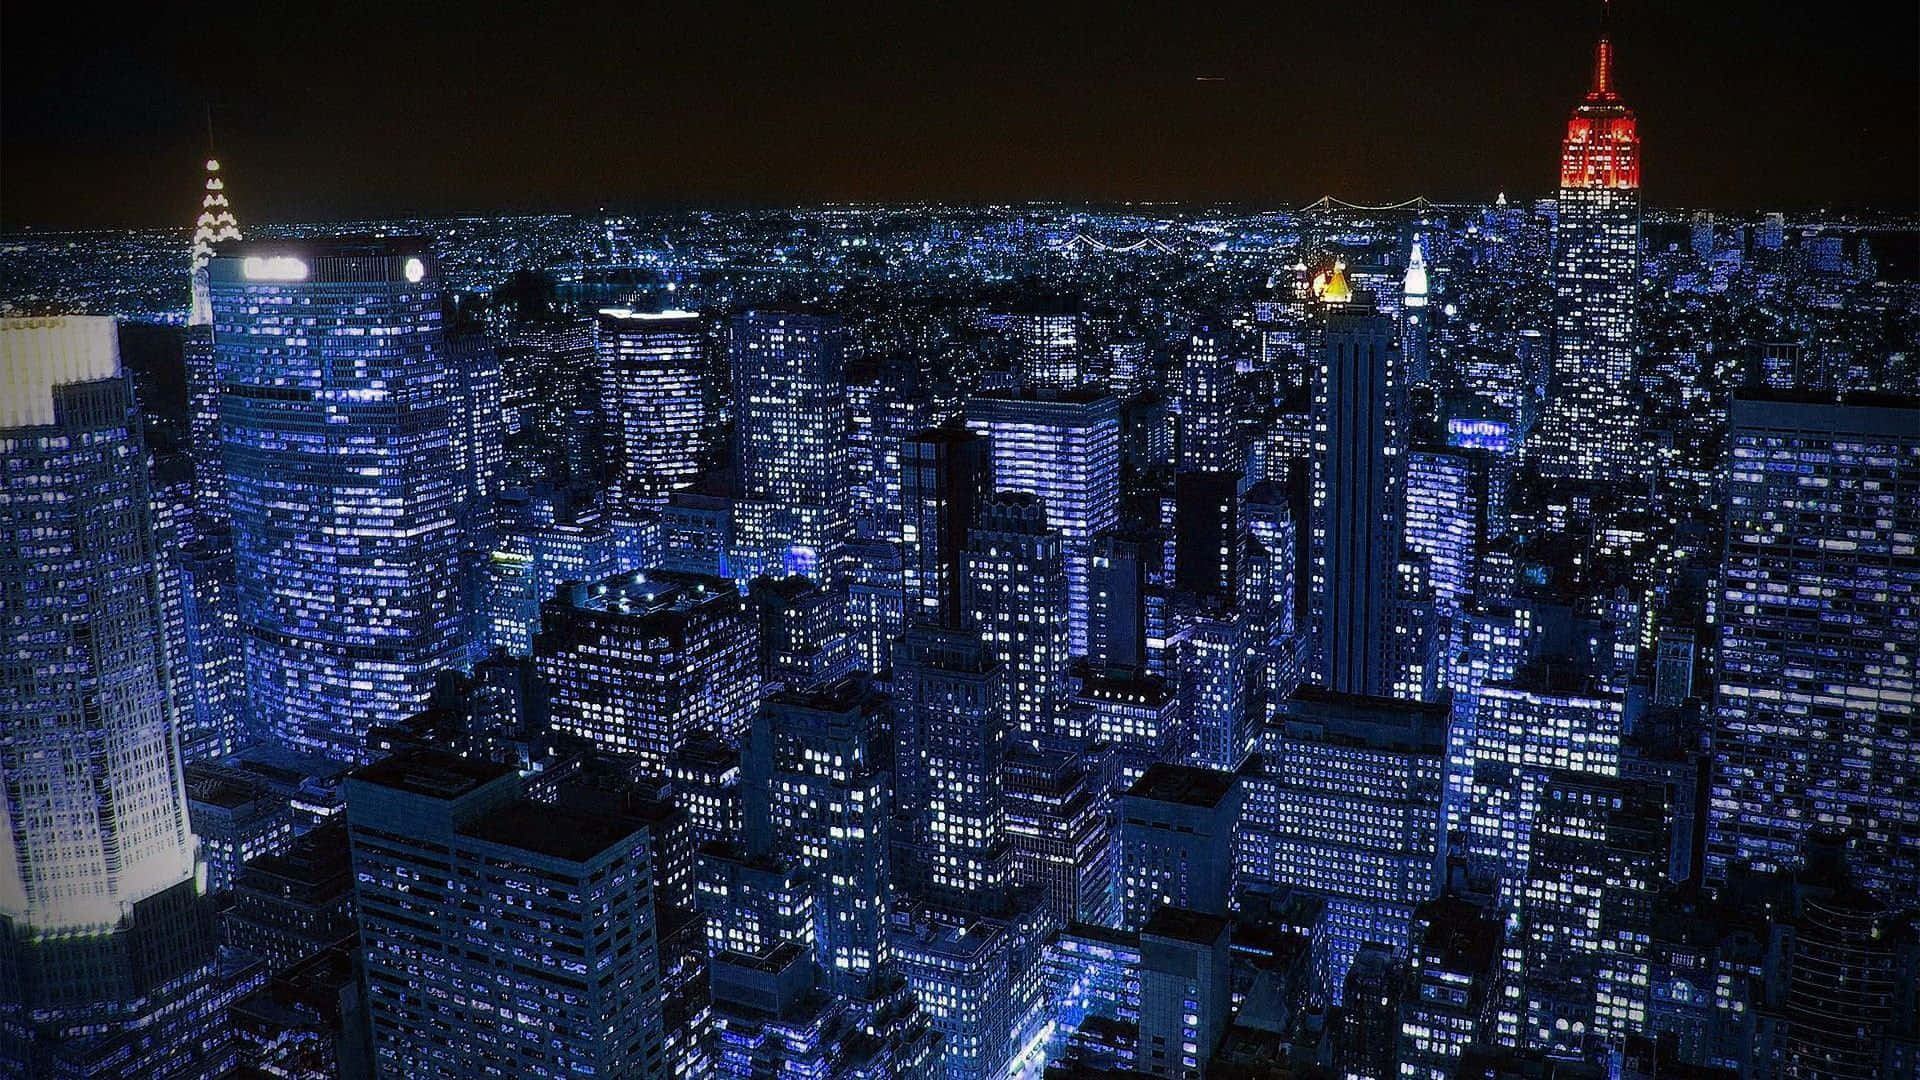 Imagende Nueva York De Noche En Tonos Morados.